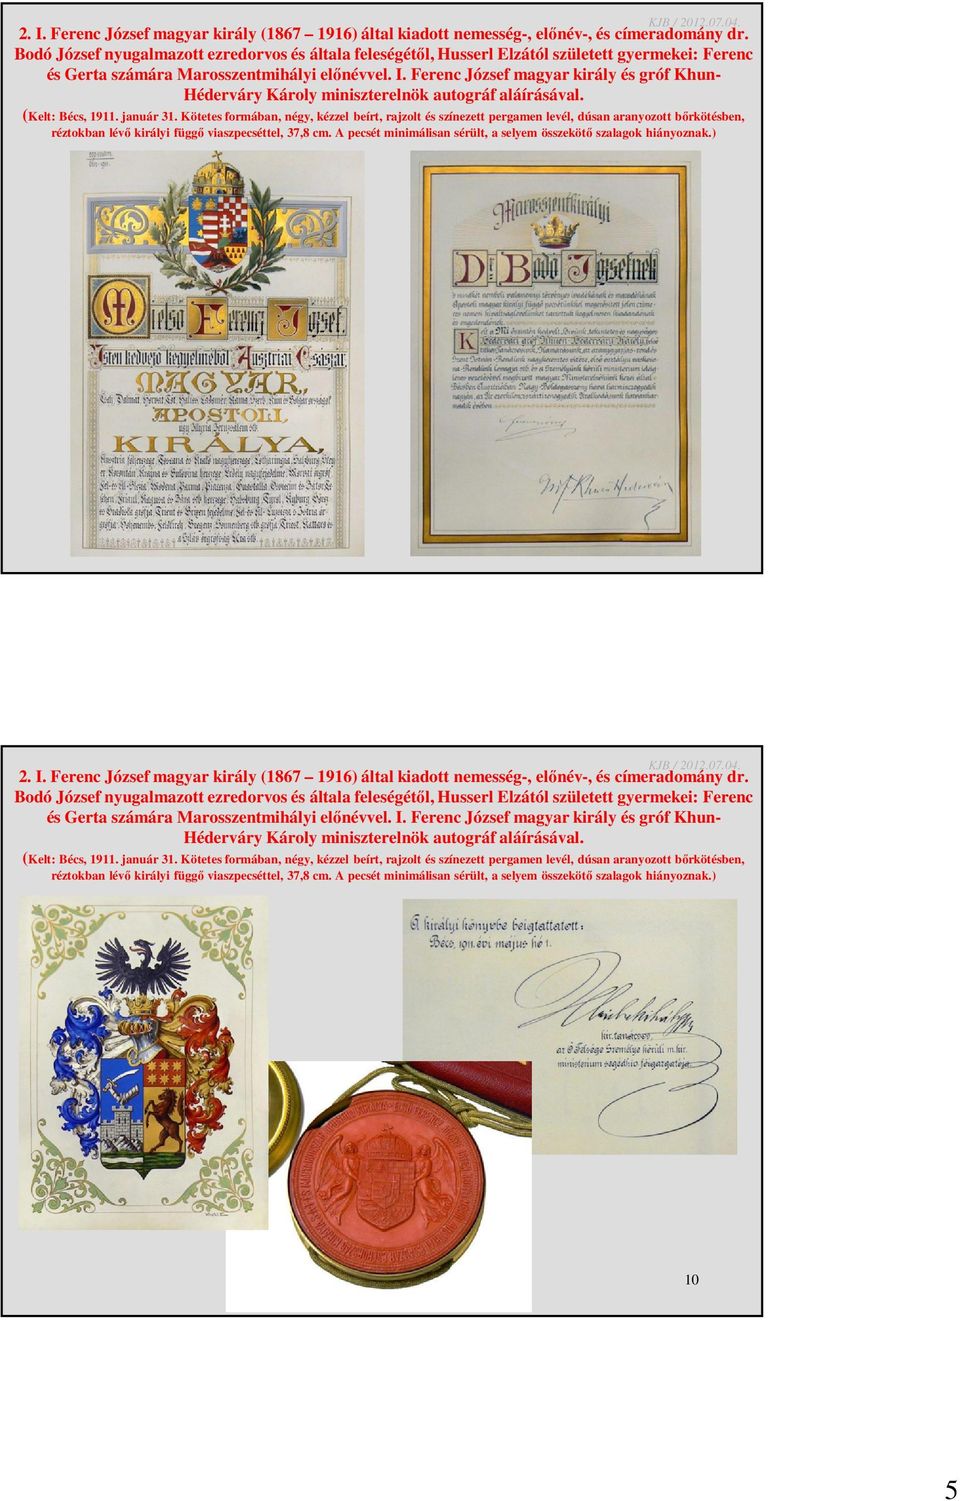 Ferenc József magyar király és gróf Khun- Héderváry Károly miniszterelnök autográf aláírásával. (Kelt: Bécs, 1911. január 31.